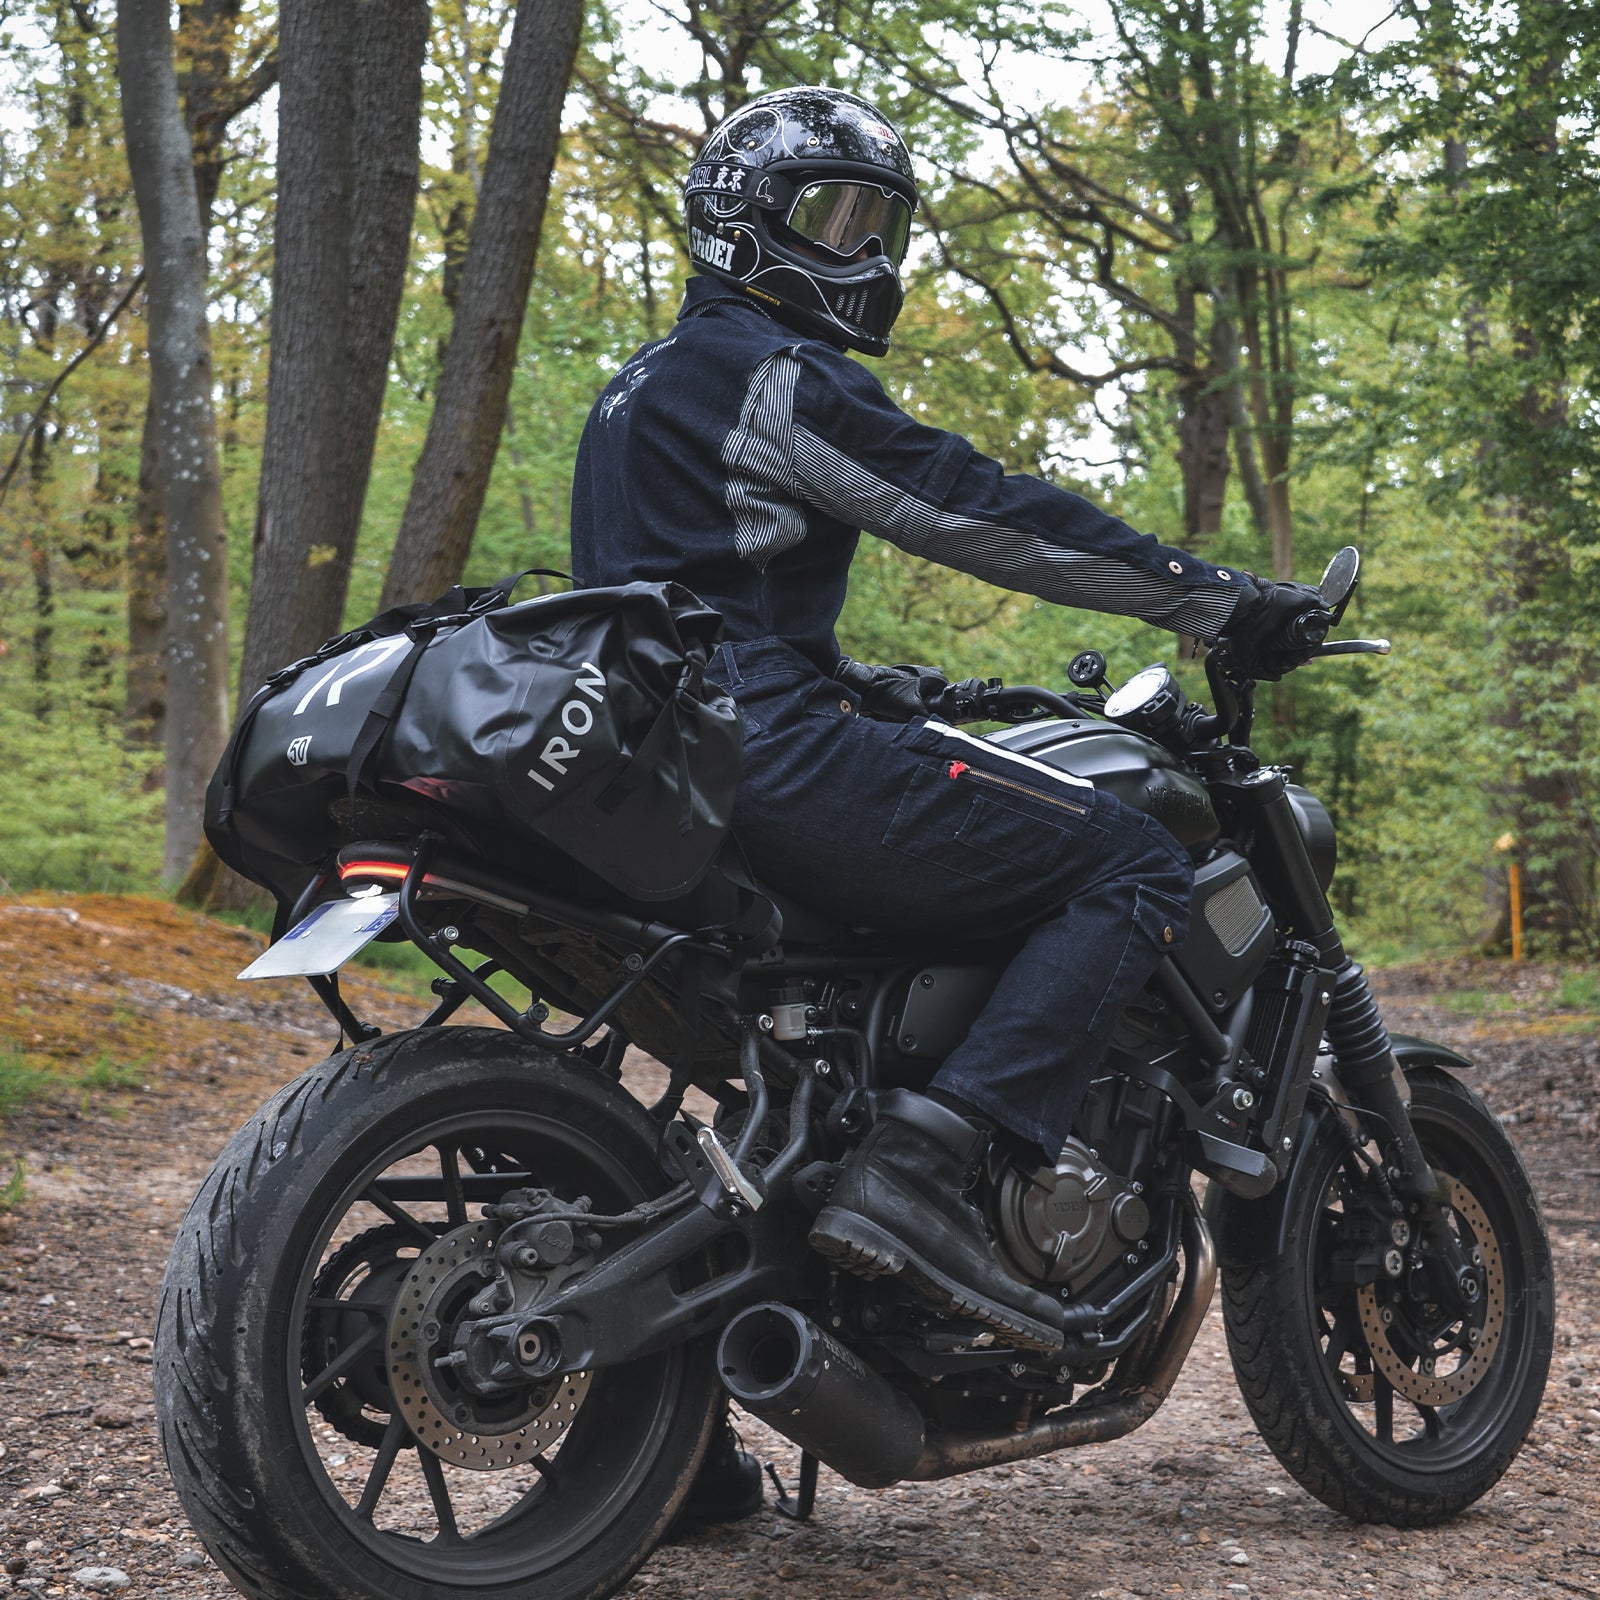 Waterproof Motorcycle Travel Bag | BAG007